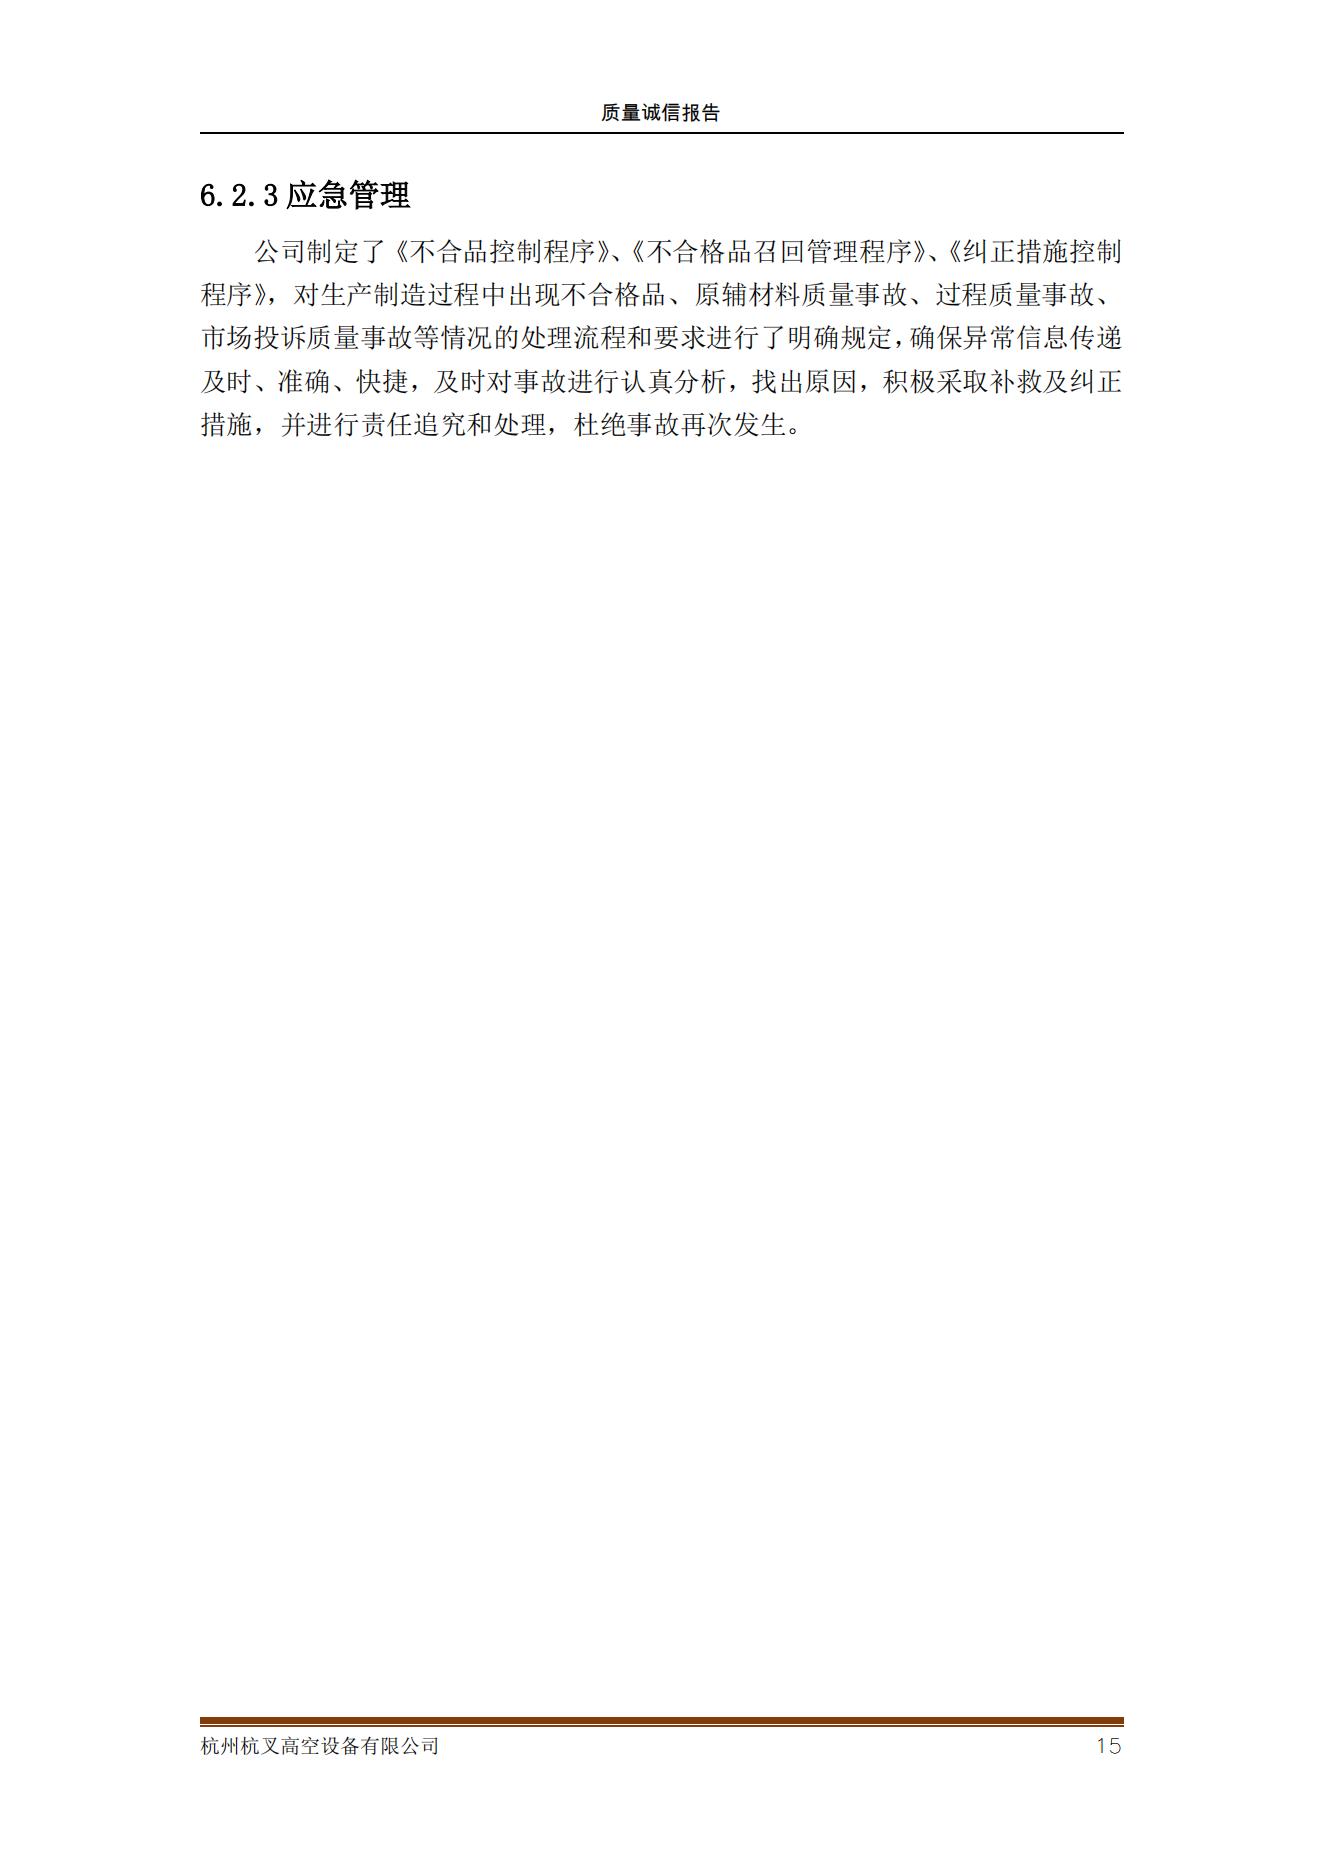 杭州杭叉高空设备公司2021年质量诚信报告(图15)